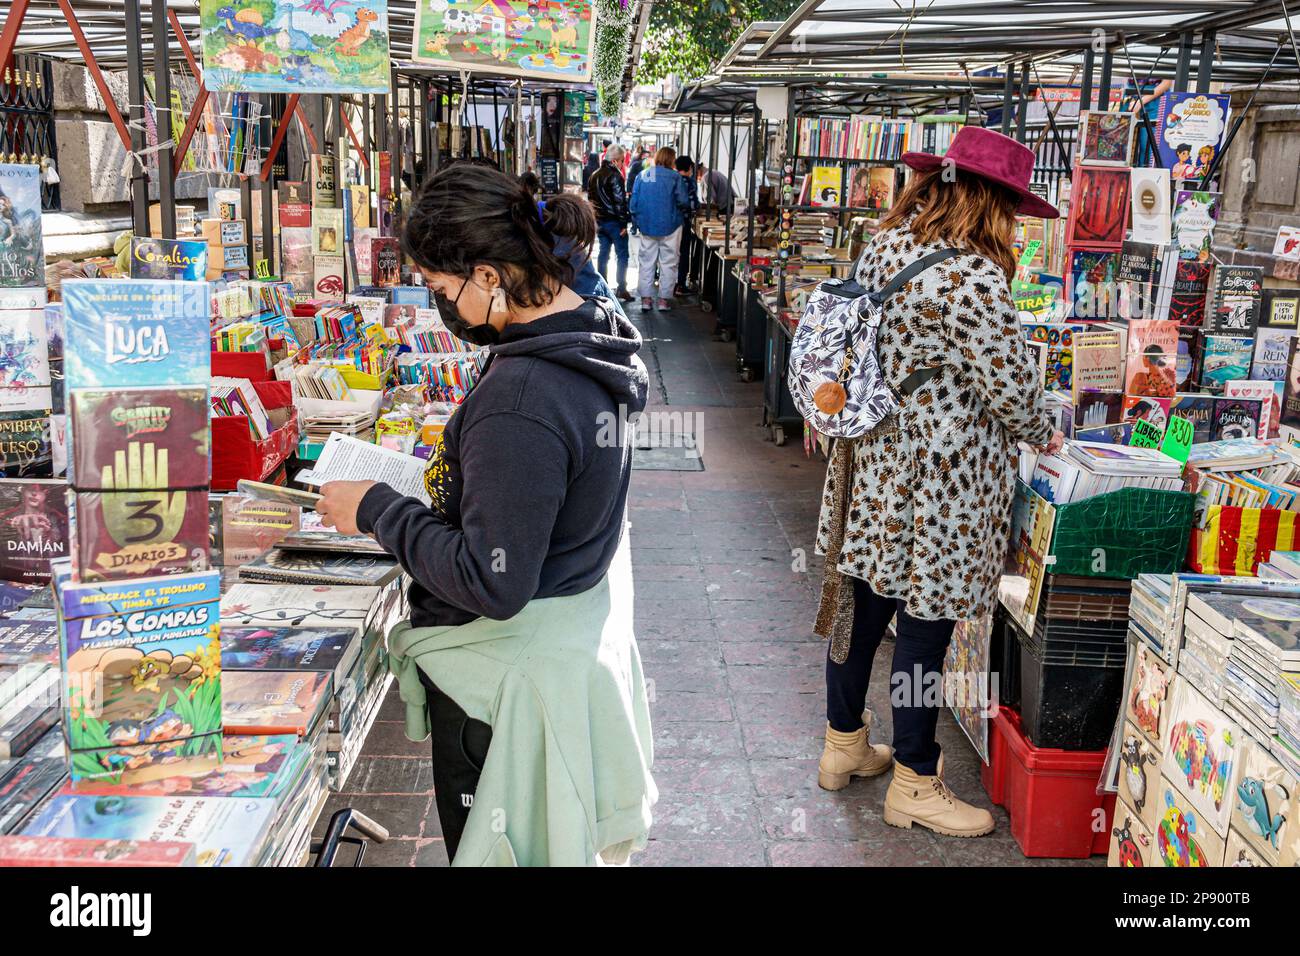 Città del Messico,Callejon Condesa Los Rescatadores,libri bookseller chioschi,navigazione leggere guardando,donna donna donna donna donna donna donna donna donna donna,adulti,res Foto Stock